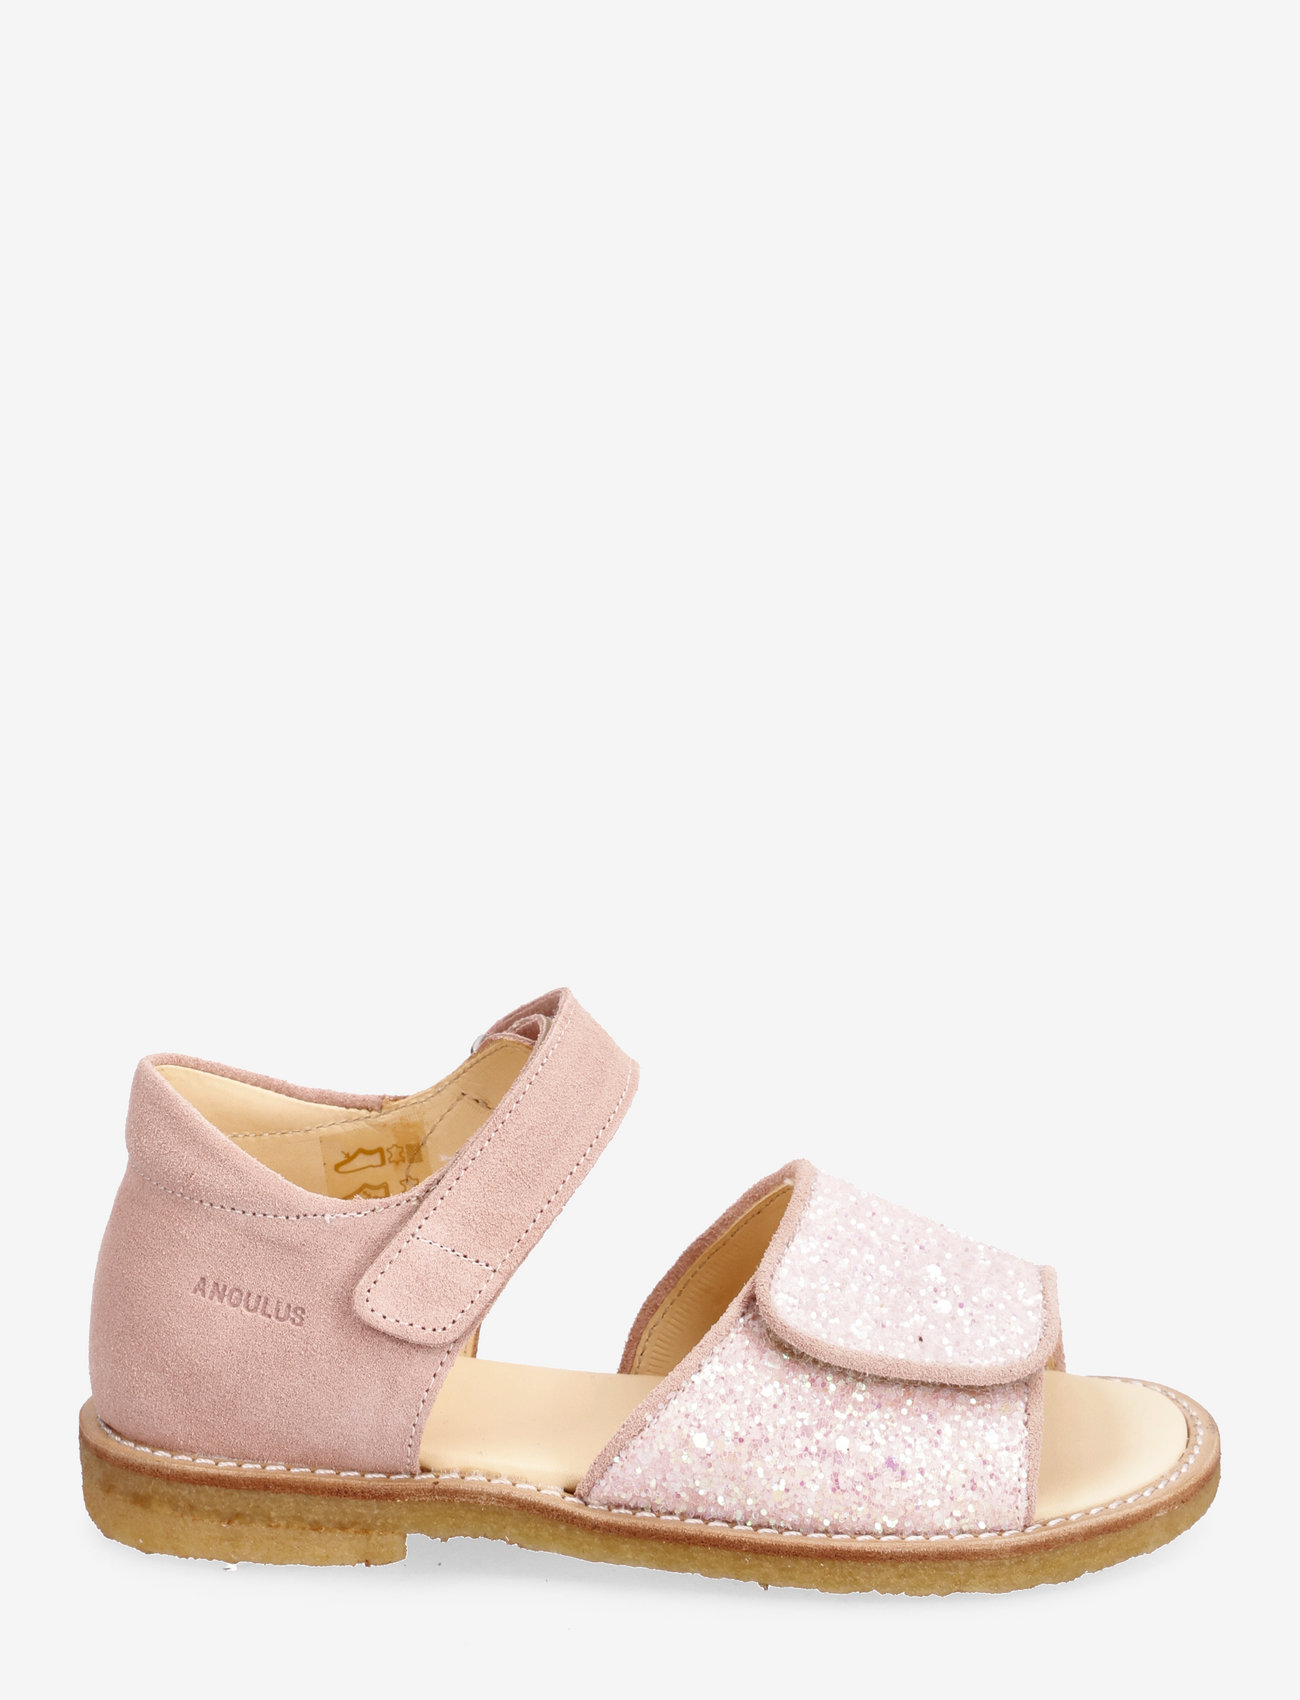 ANGULUS - Sandals - flat - open toe - clo - sommerschnäppchen - 1139/2698 peach/rosa glitter - 1